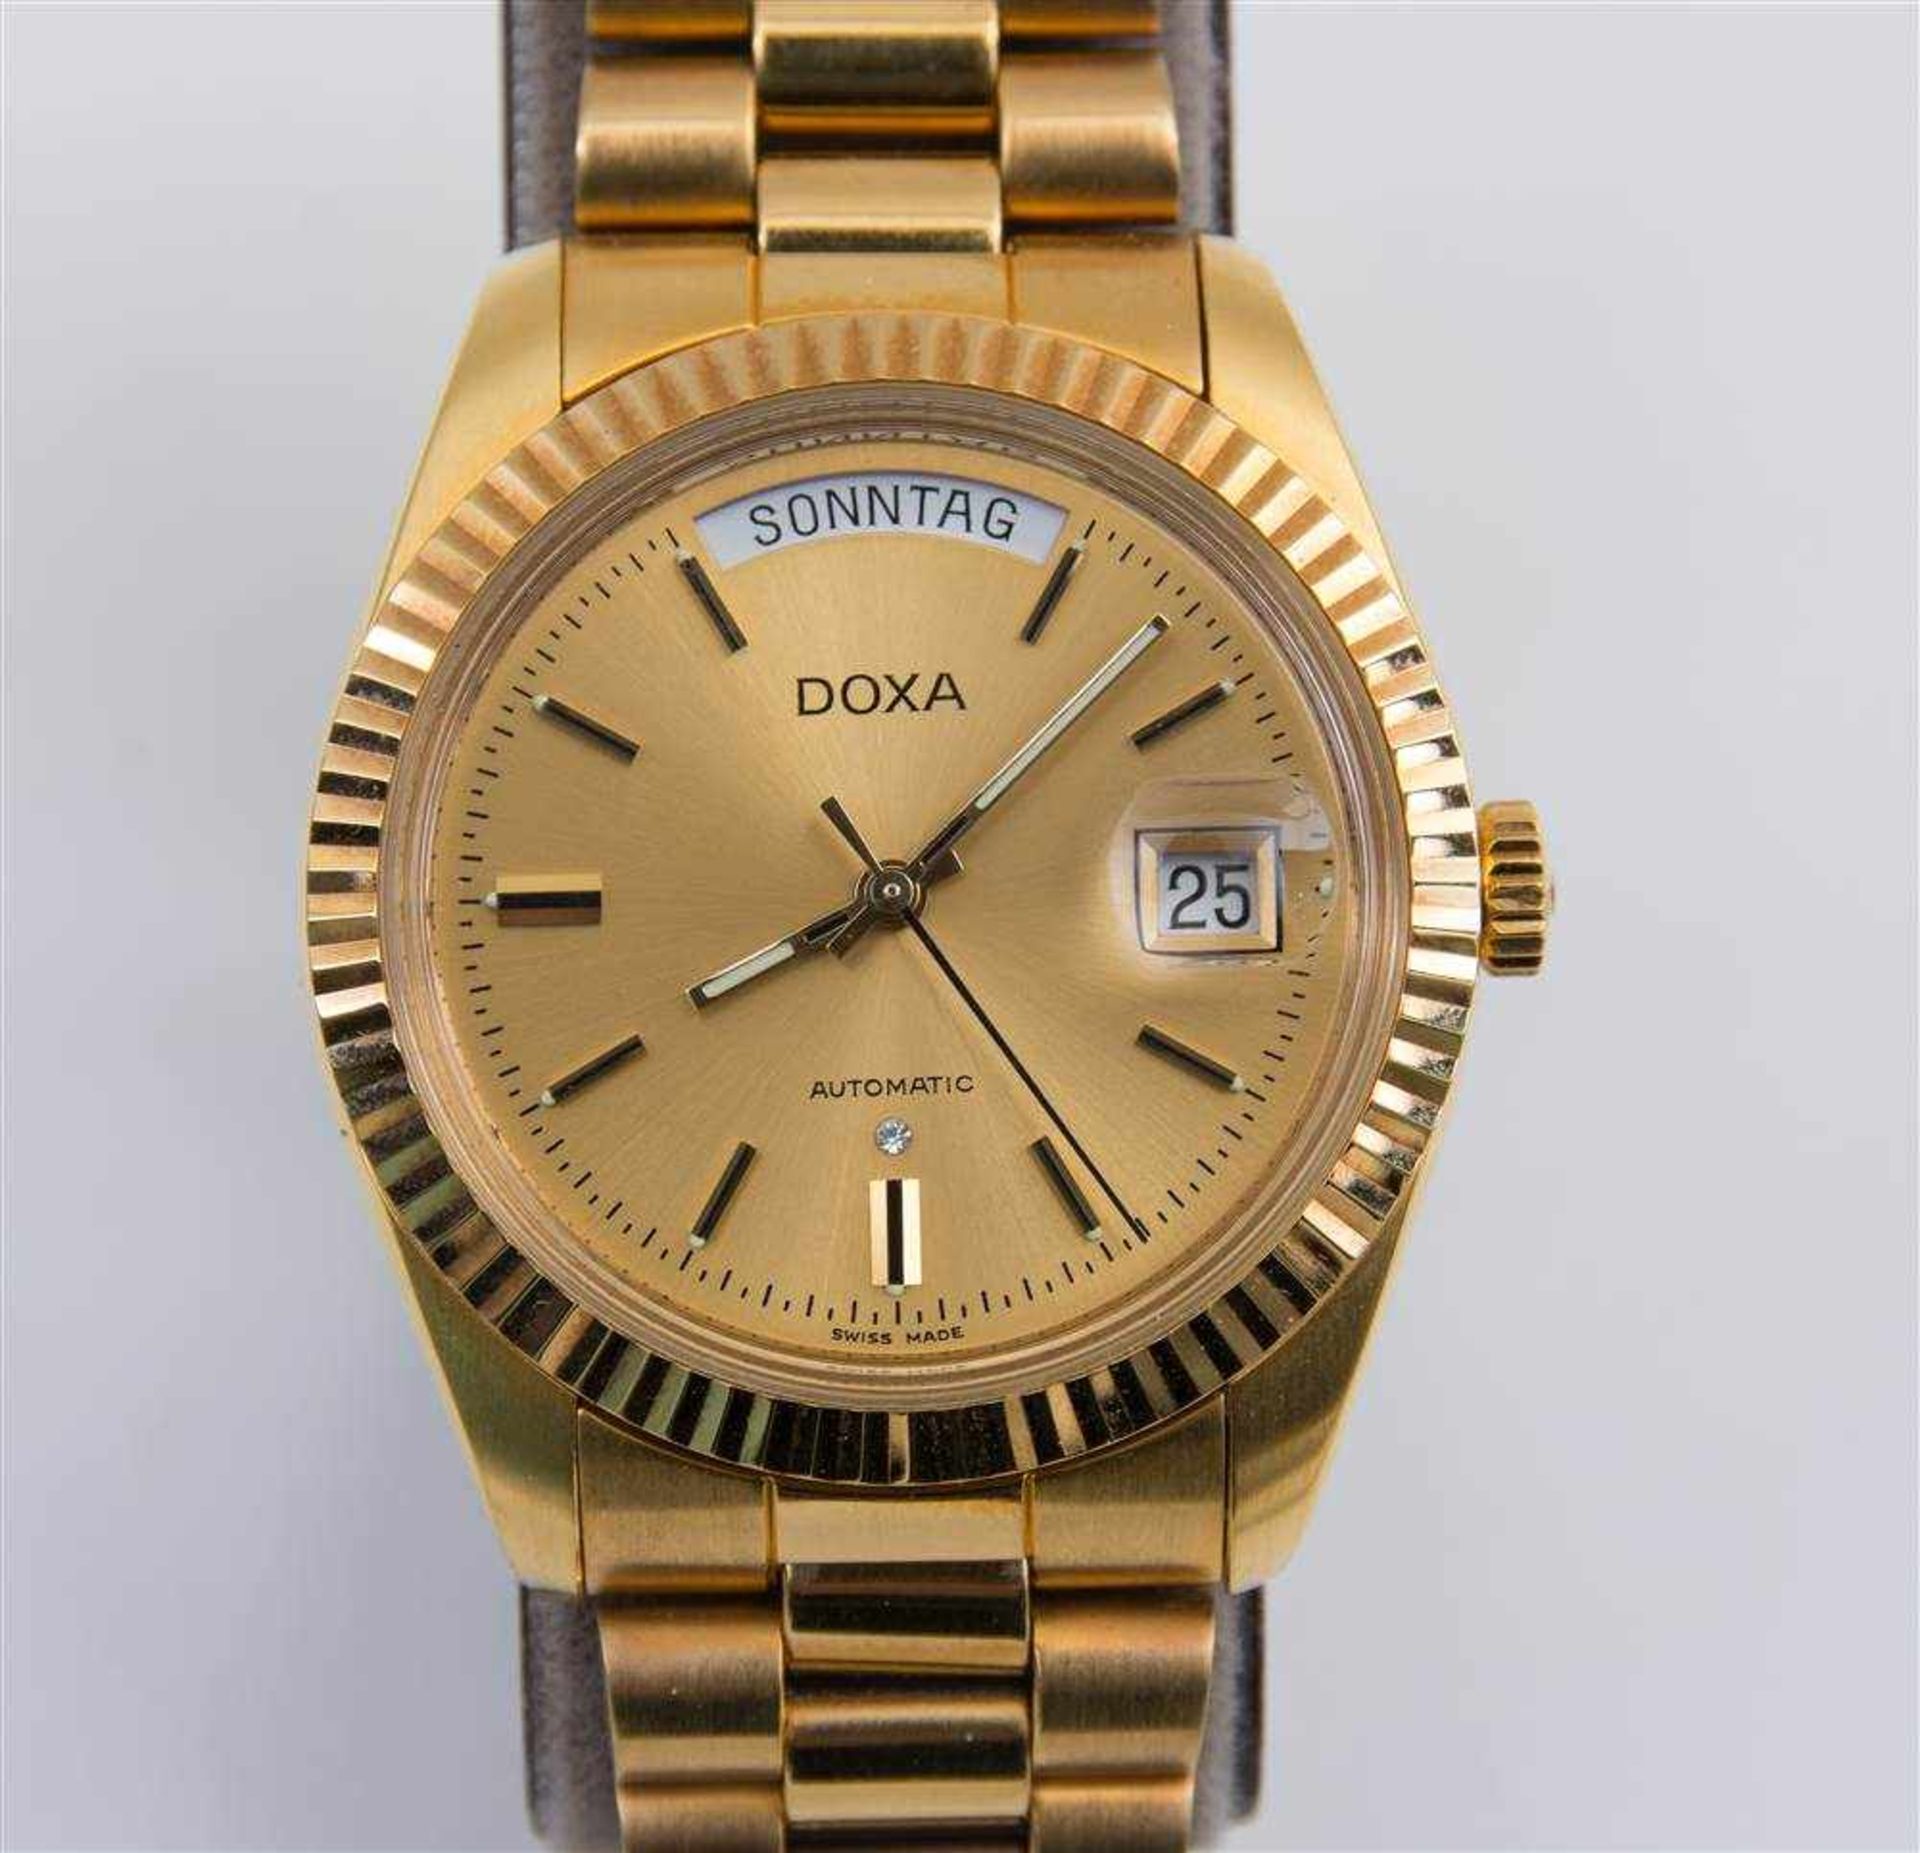 DOXA, "Datejust" Armbanduhr goldfarbenes Edelstahlgehäuse, Band mit Klappschließe, Index dekoriert - Bild 2 aus 5